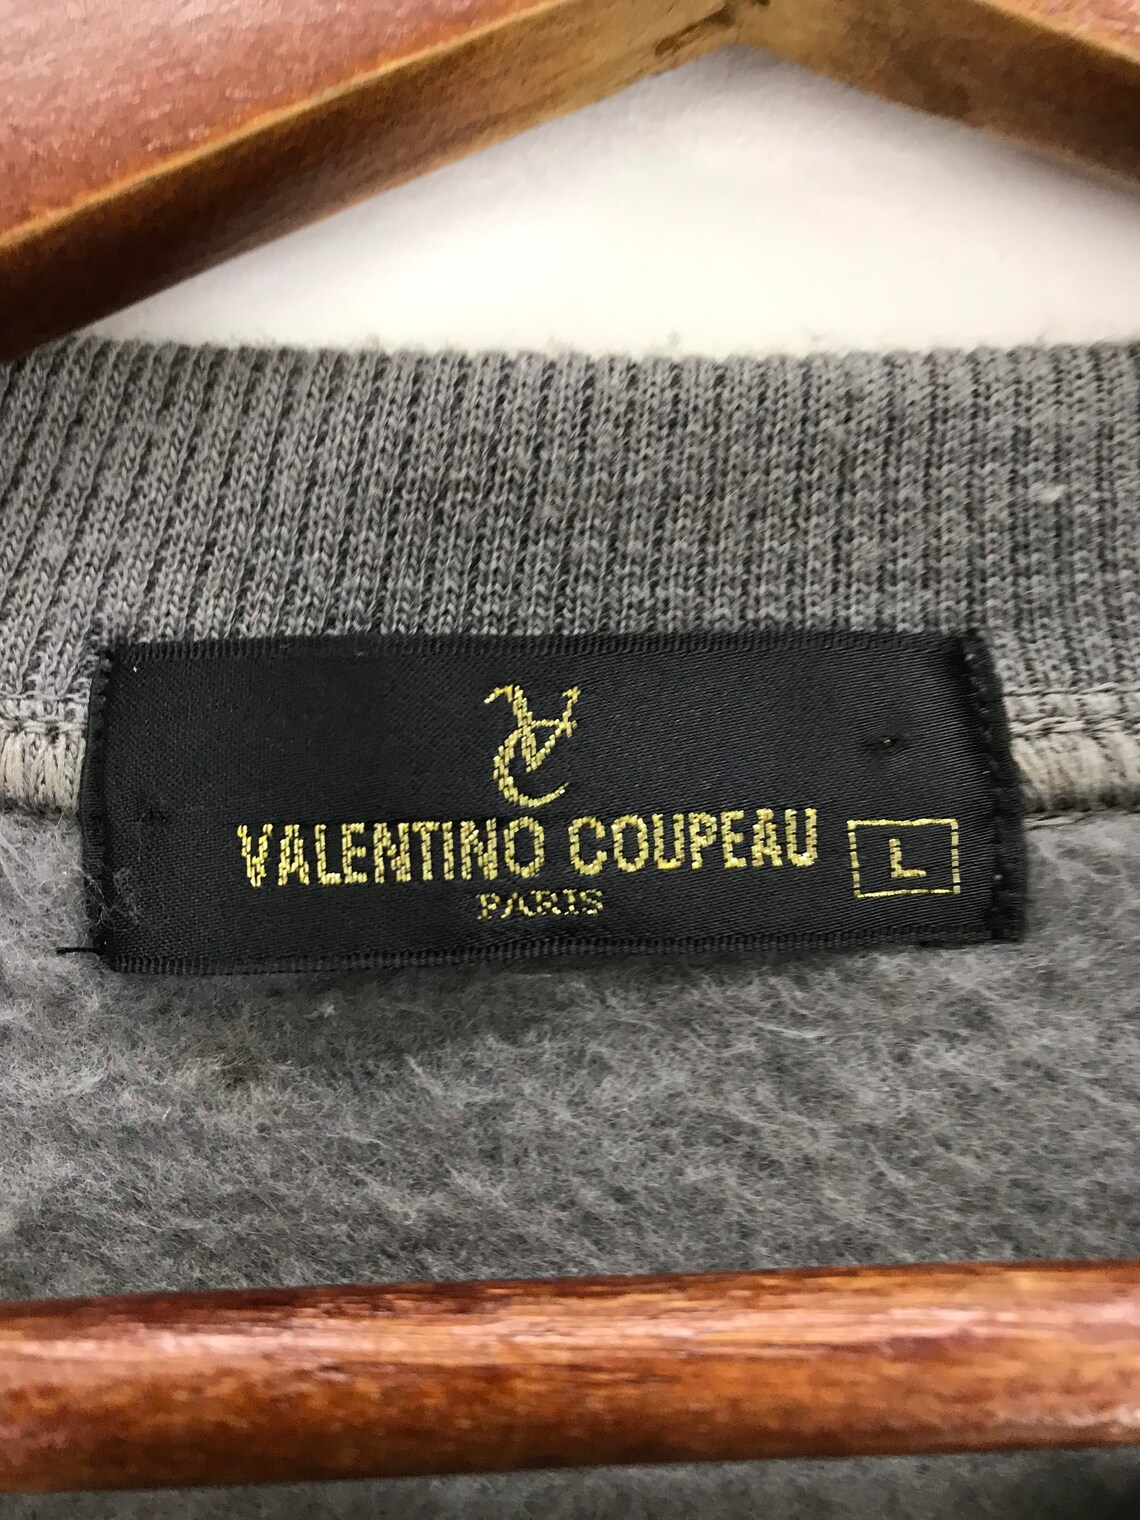 Vintage 90s Valentino Coupeau Paris Sweatshirt Spallout | Etsy